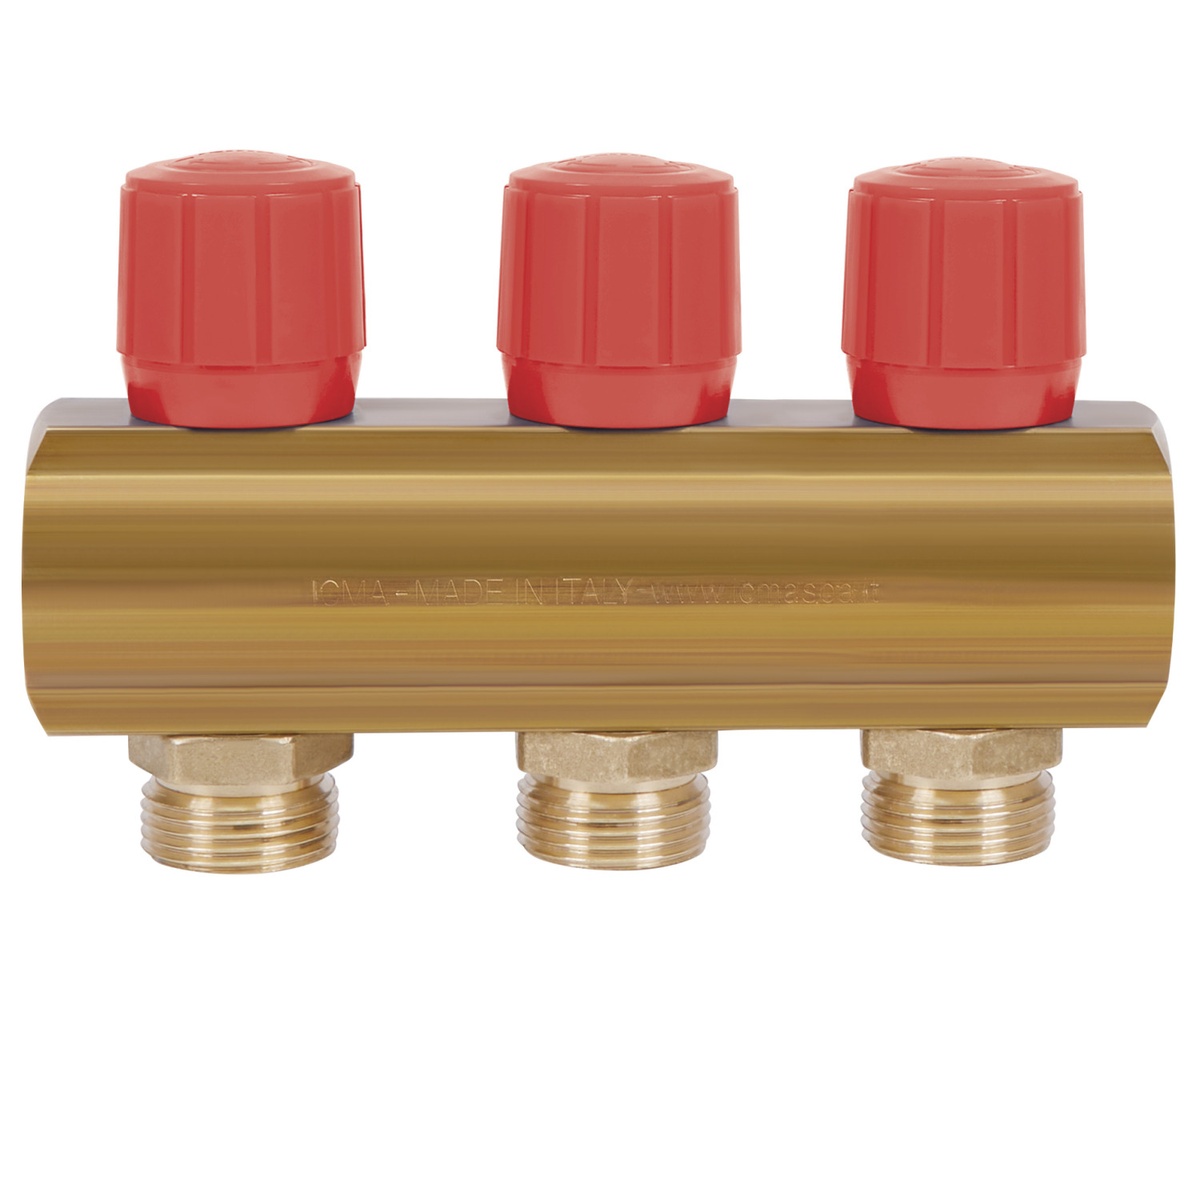 Коллектор для водопровода ICMA 3 контура 1"/3/4" 1105 (Red) 871105PH0511